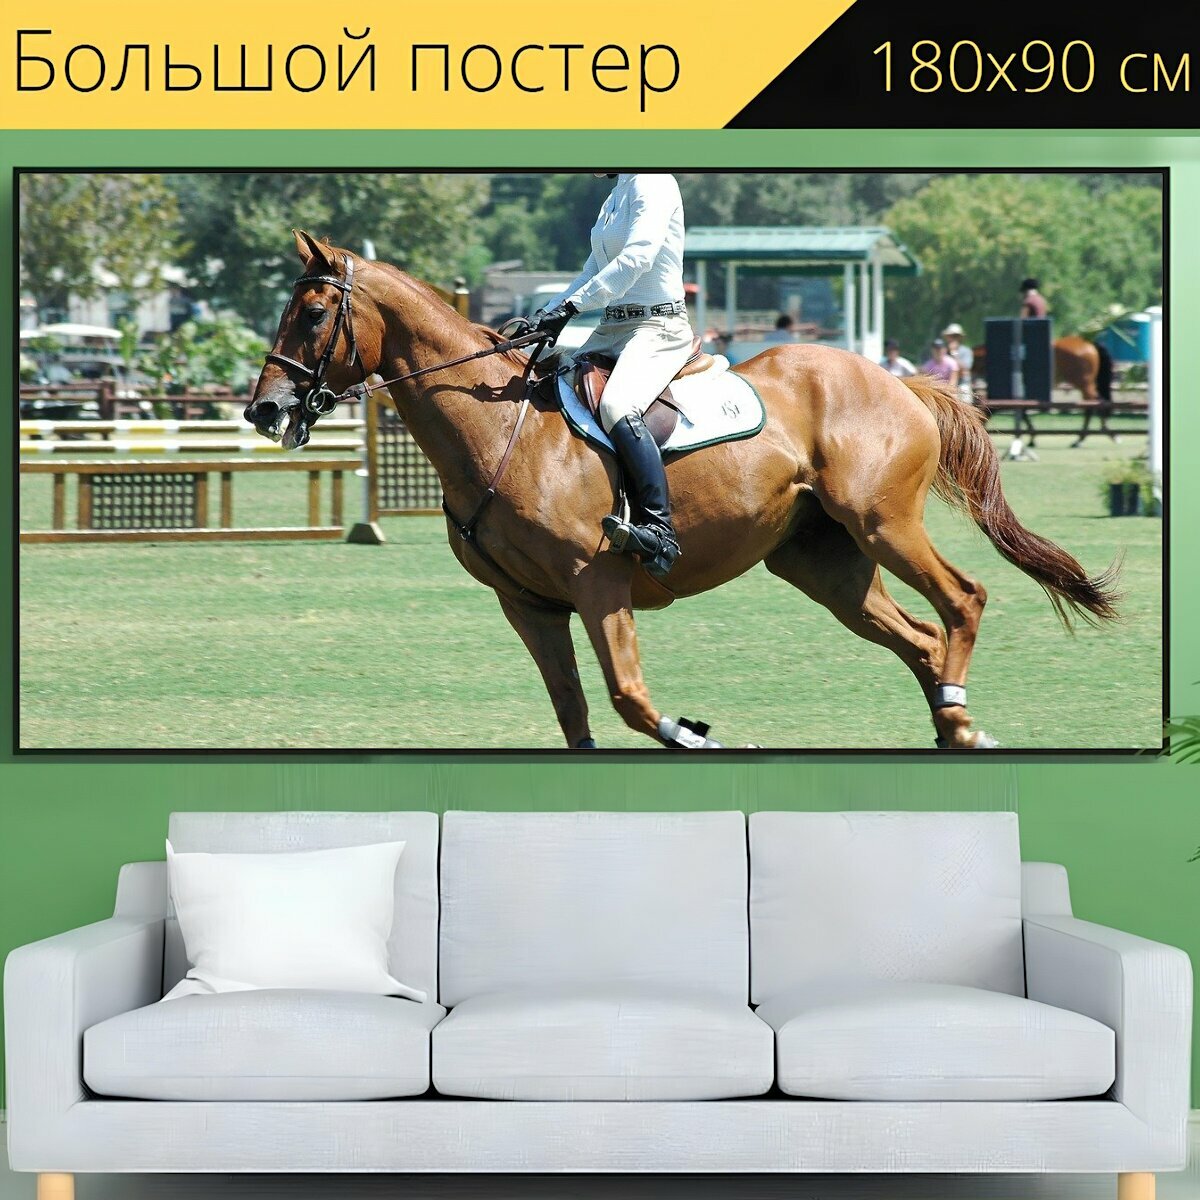 Большой постер "Лошадь, лошади, конный спорт" 180 x 90 см. для интерьера